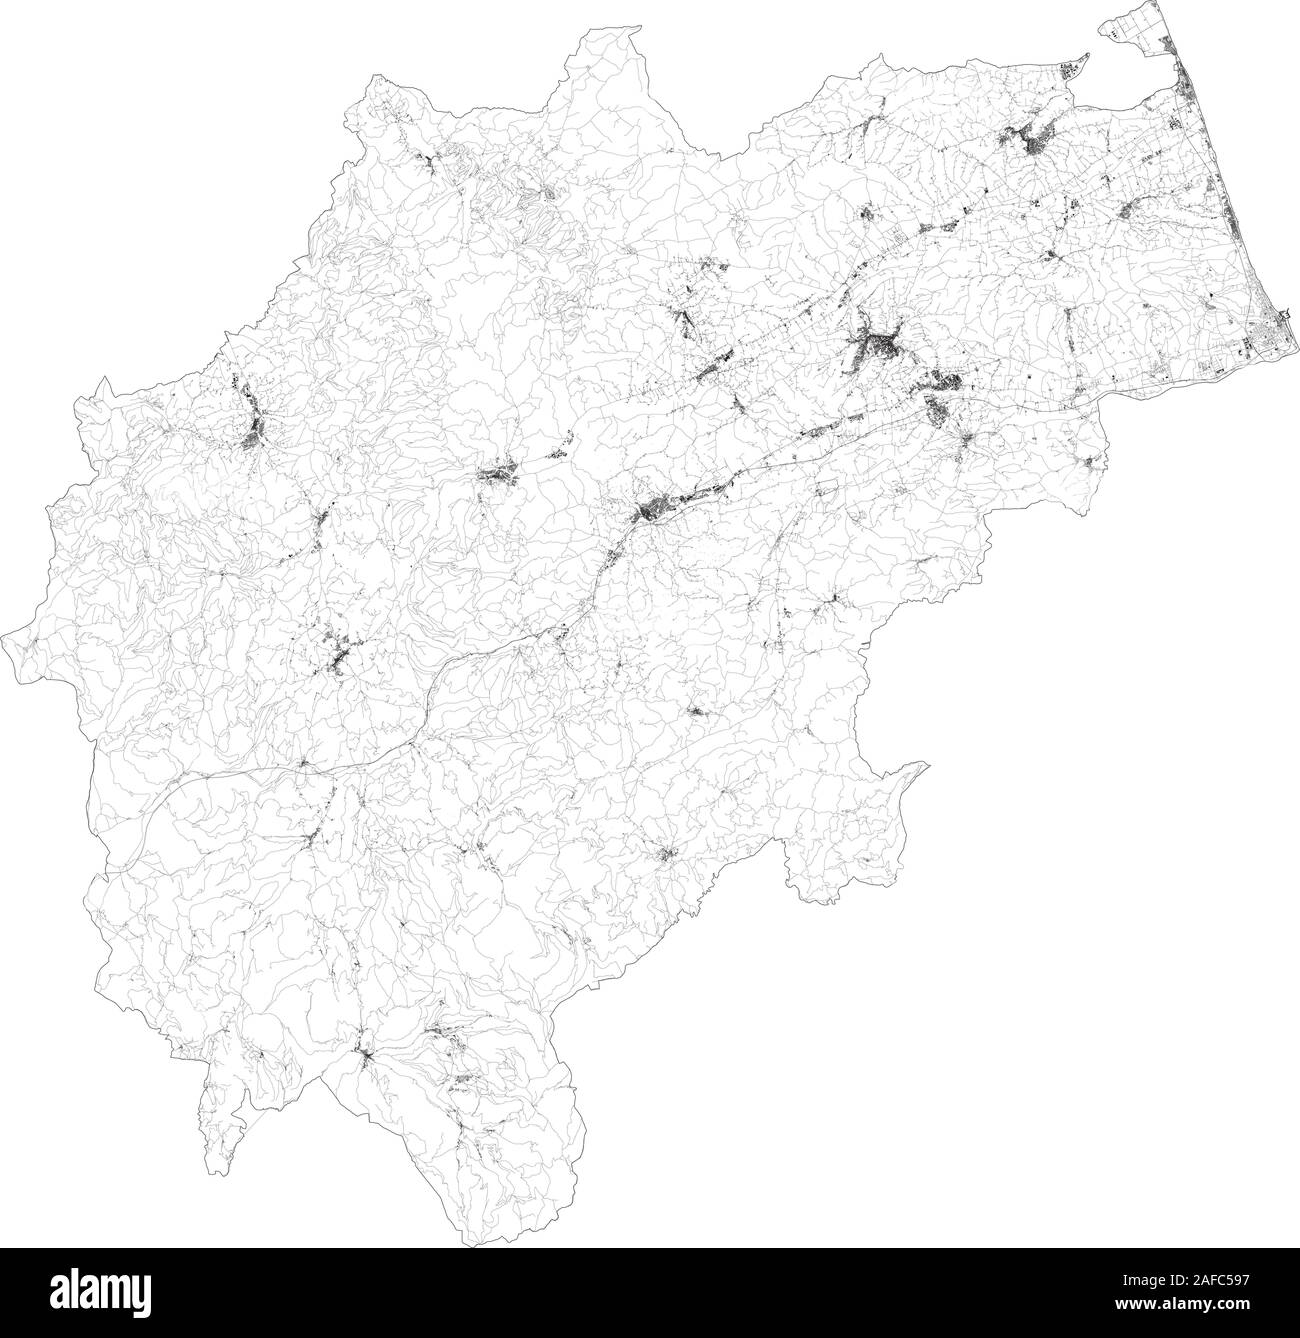 Sat-Karte der Provinz Macerata, Städte und Straßen, Gebäude und Straßen der Umgebung. Region Marche, Italien. Karte Straßen Stock Vektor